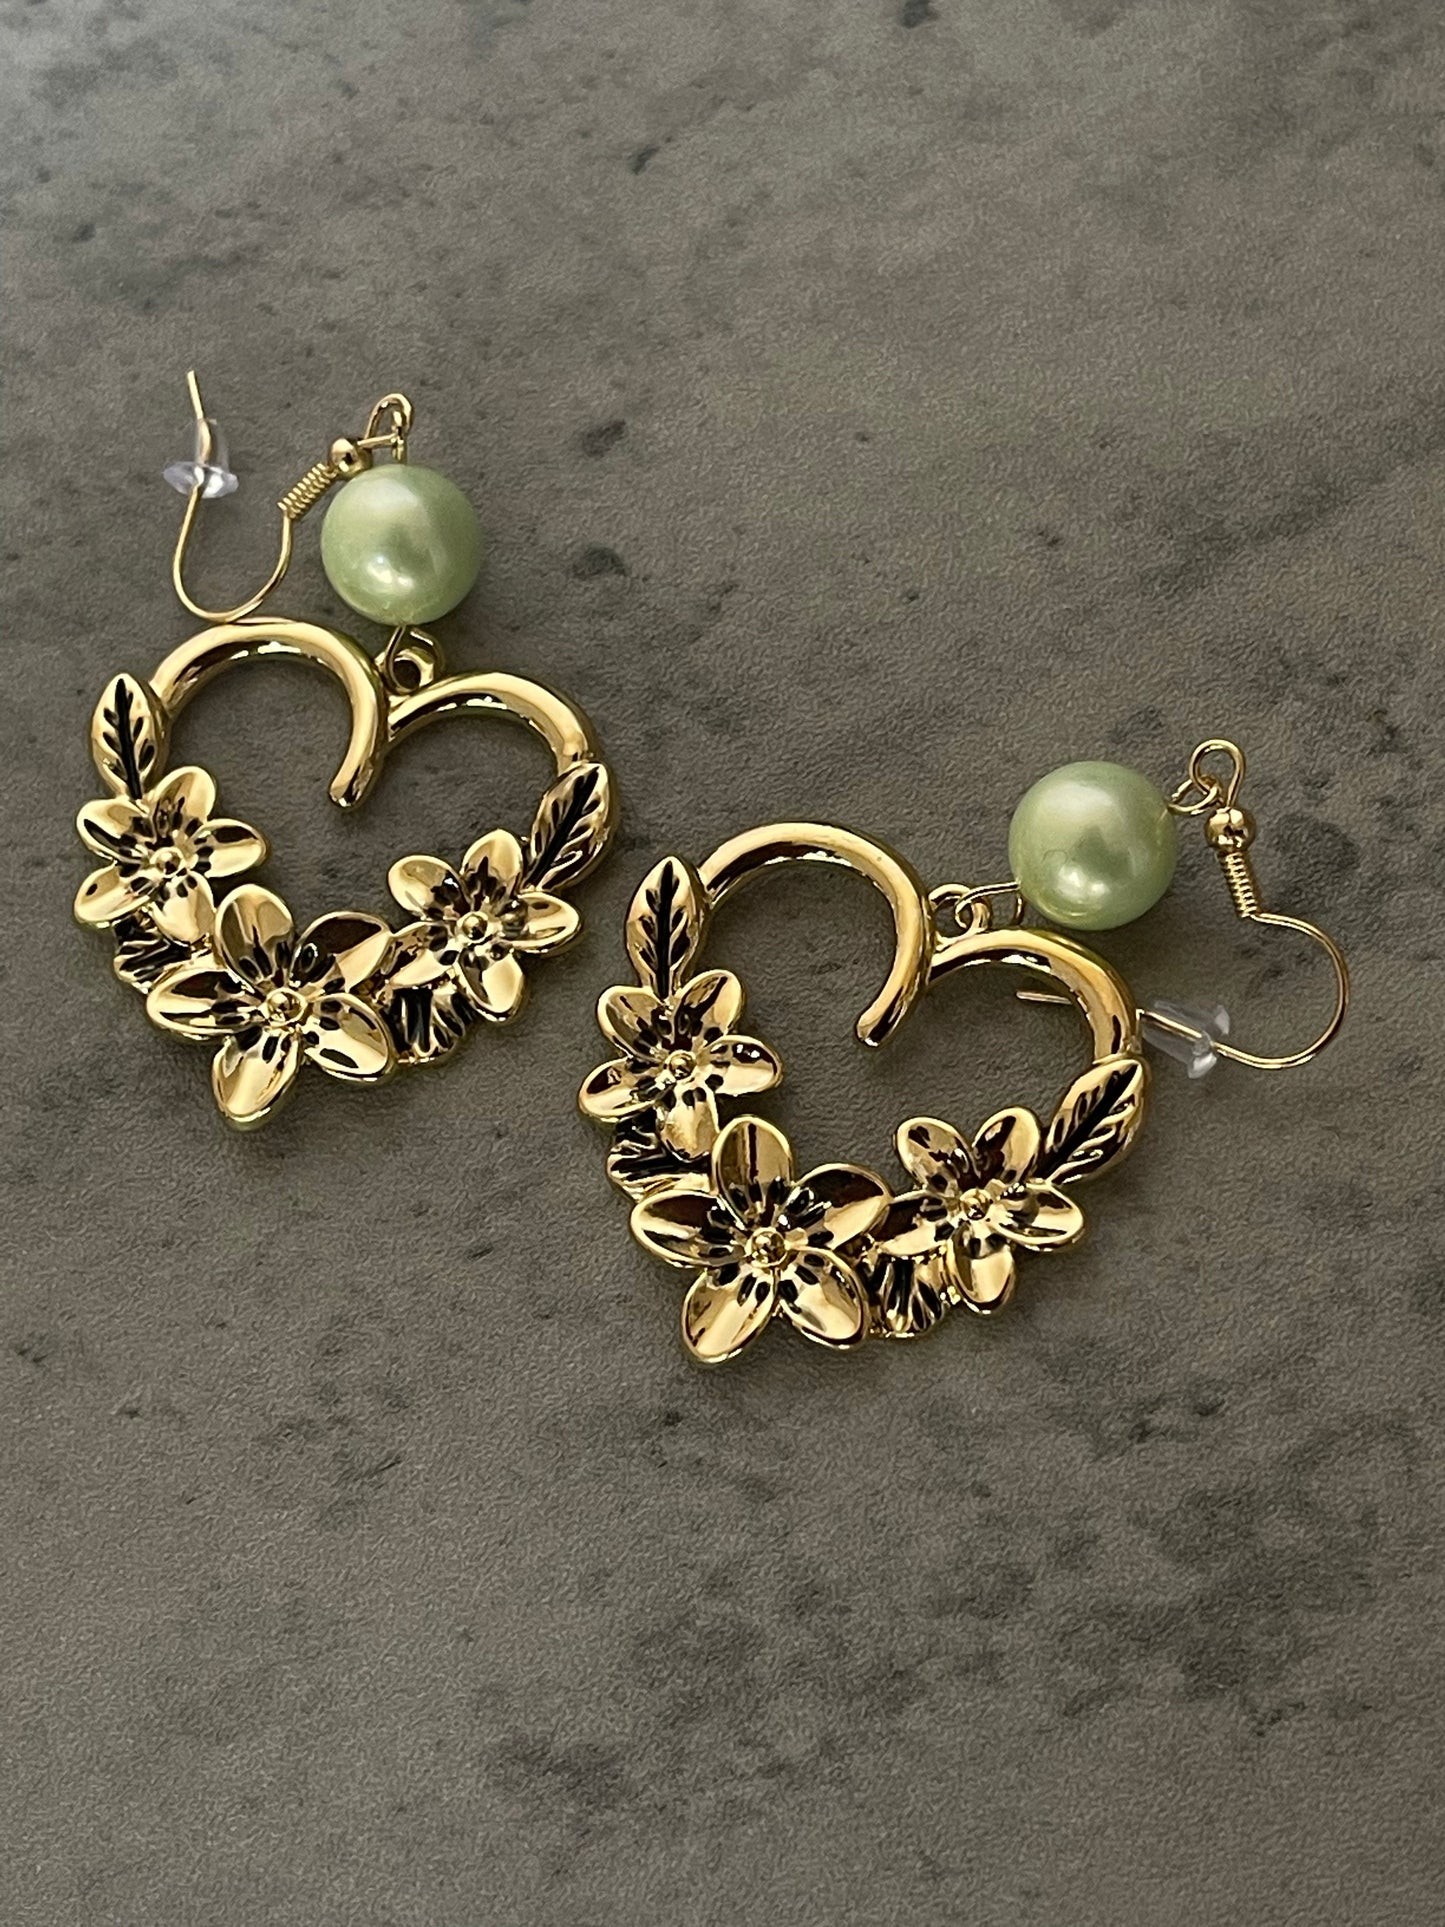 Floral heart earrings